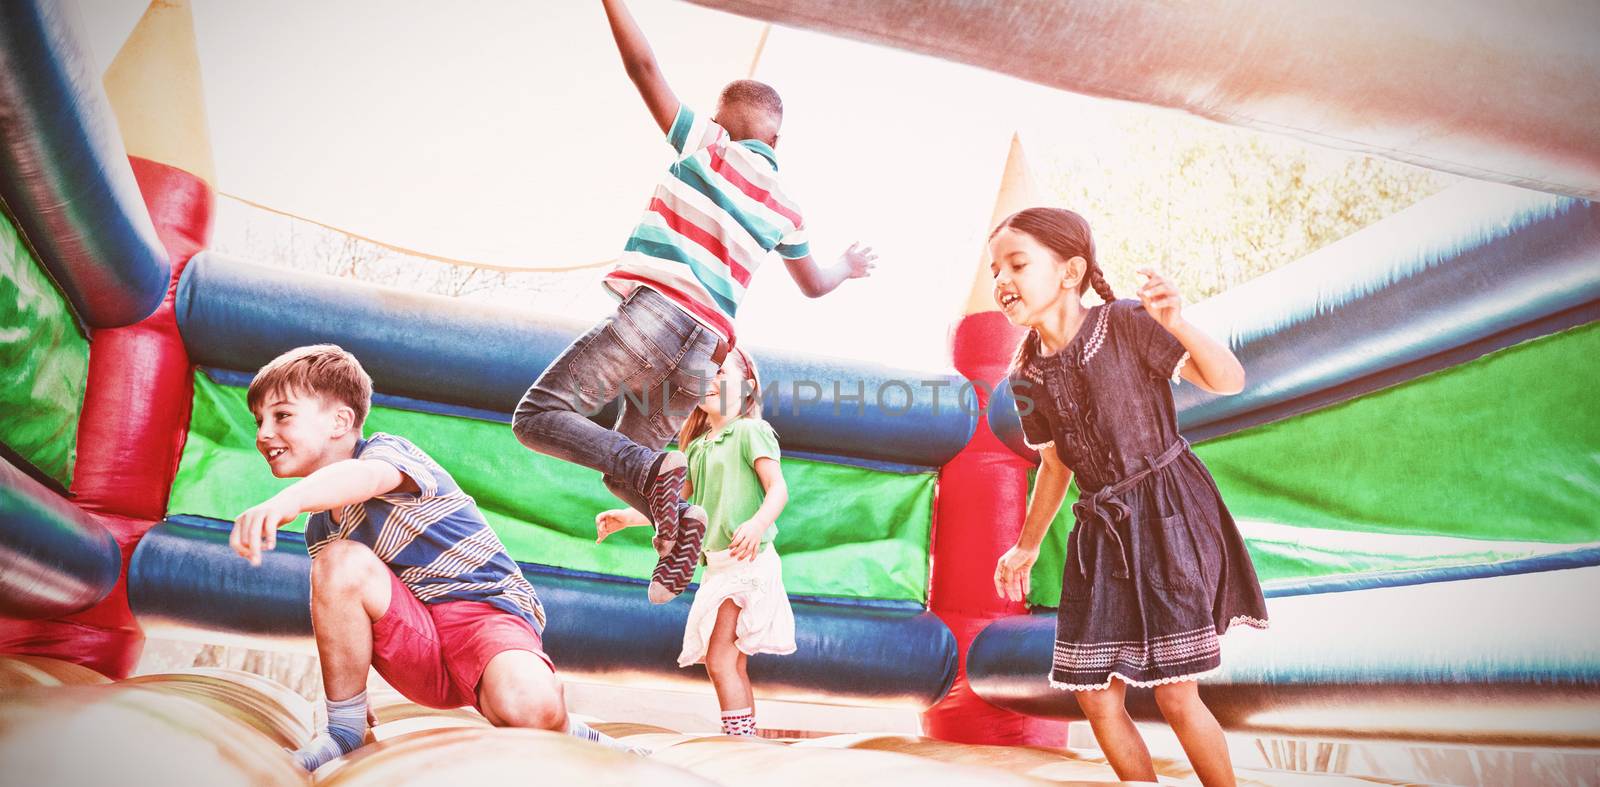 Friends jumping on bouncy castle by Wavebreakmedia